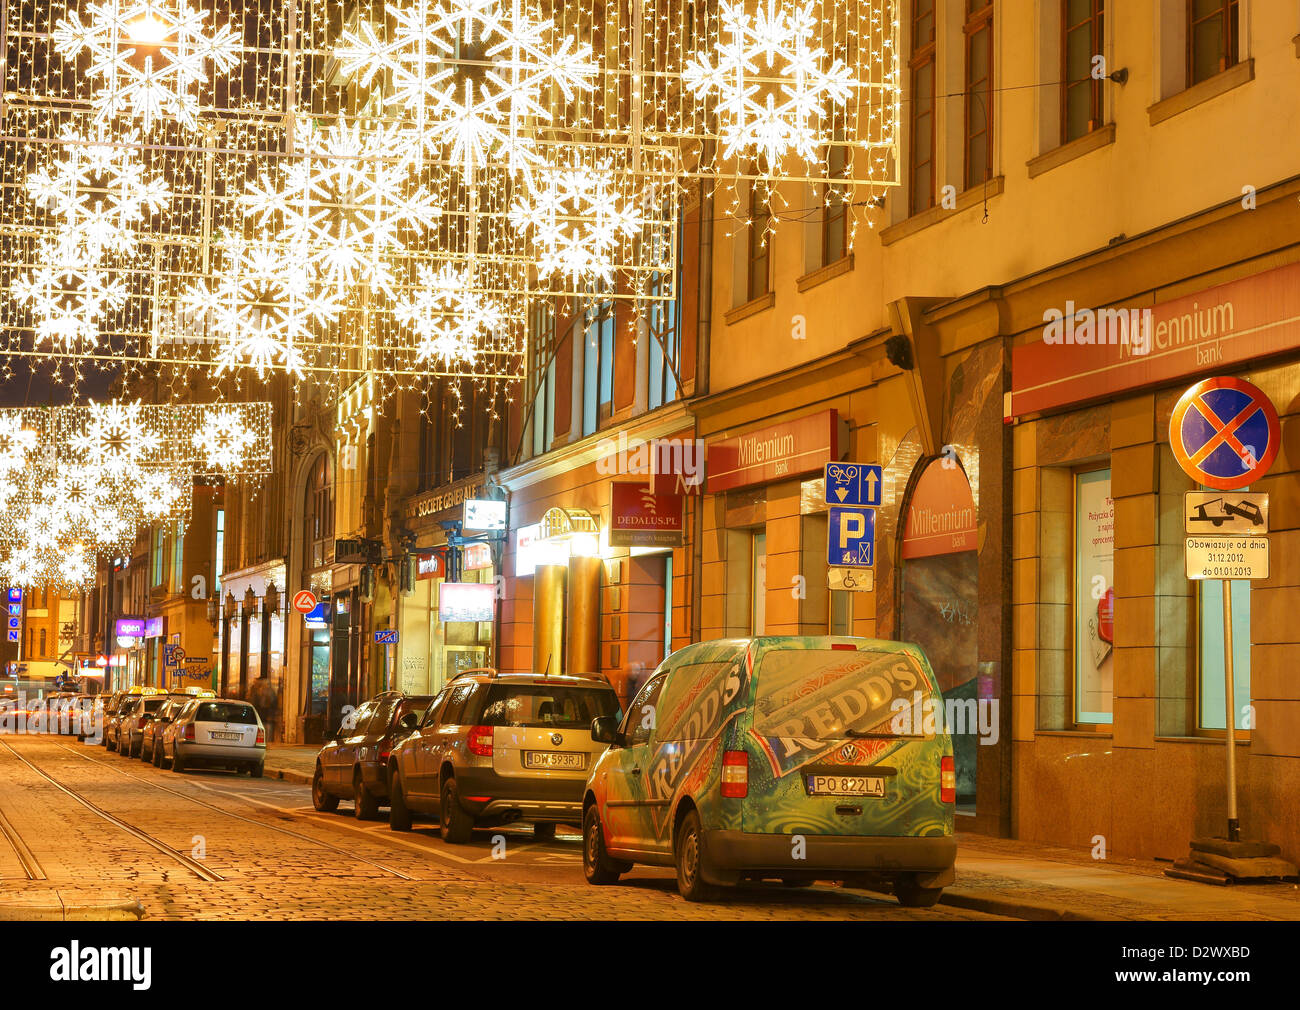 Wroclaw il Vecchio Mercato di Natale decorazioni di notte Foto Stock